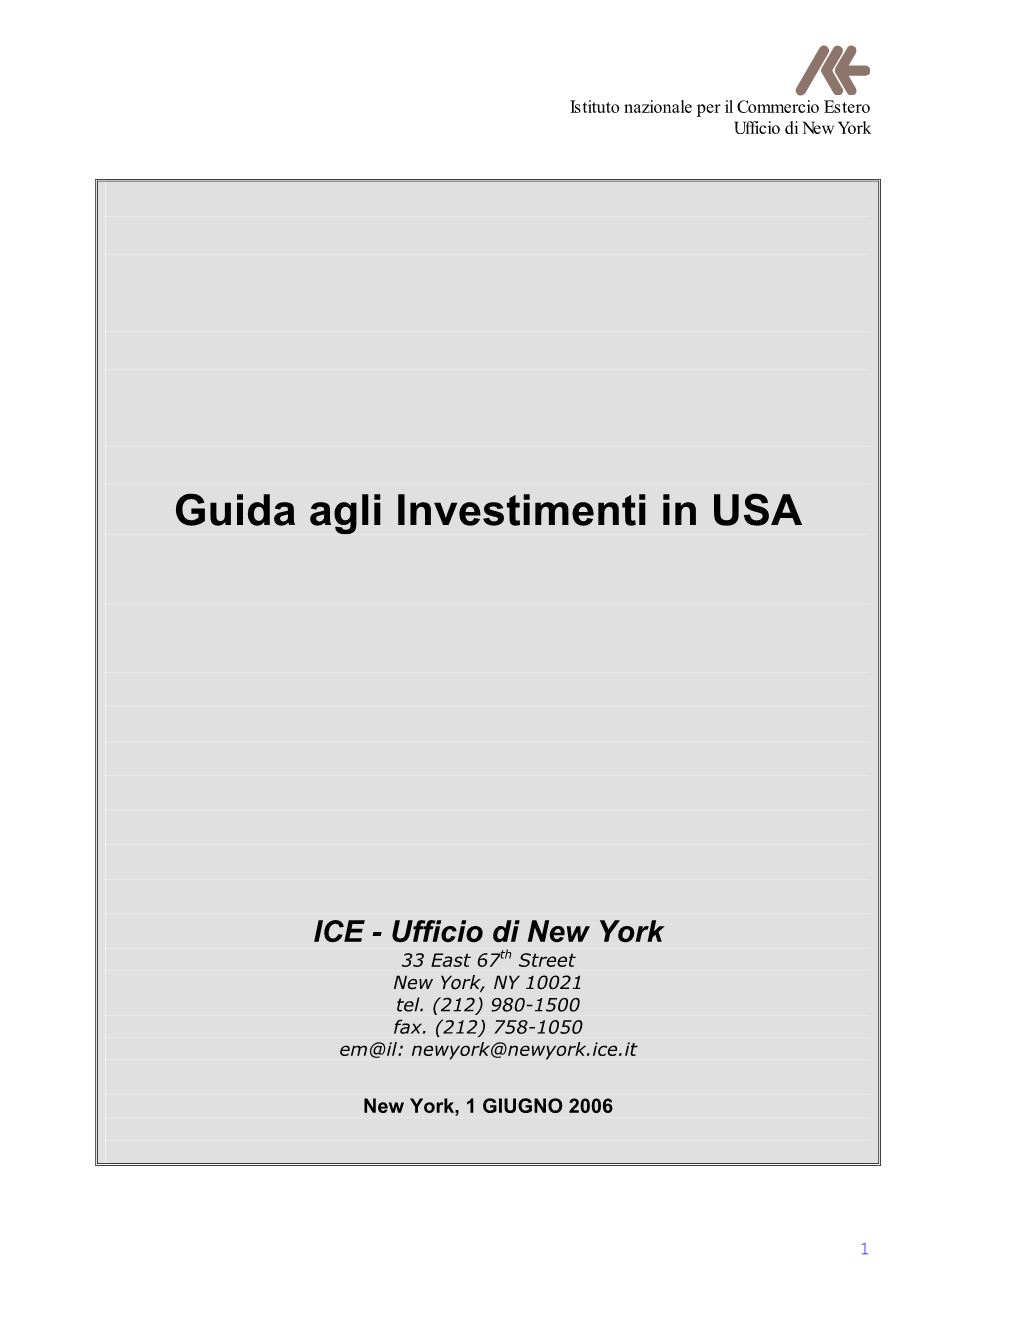 Guida Agli Investimenti in USA